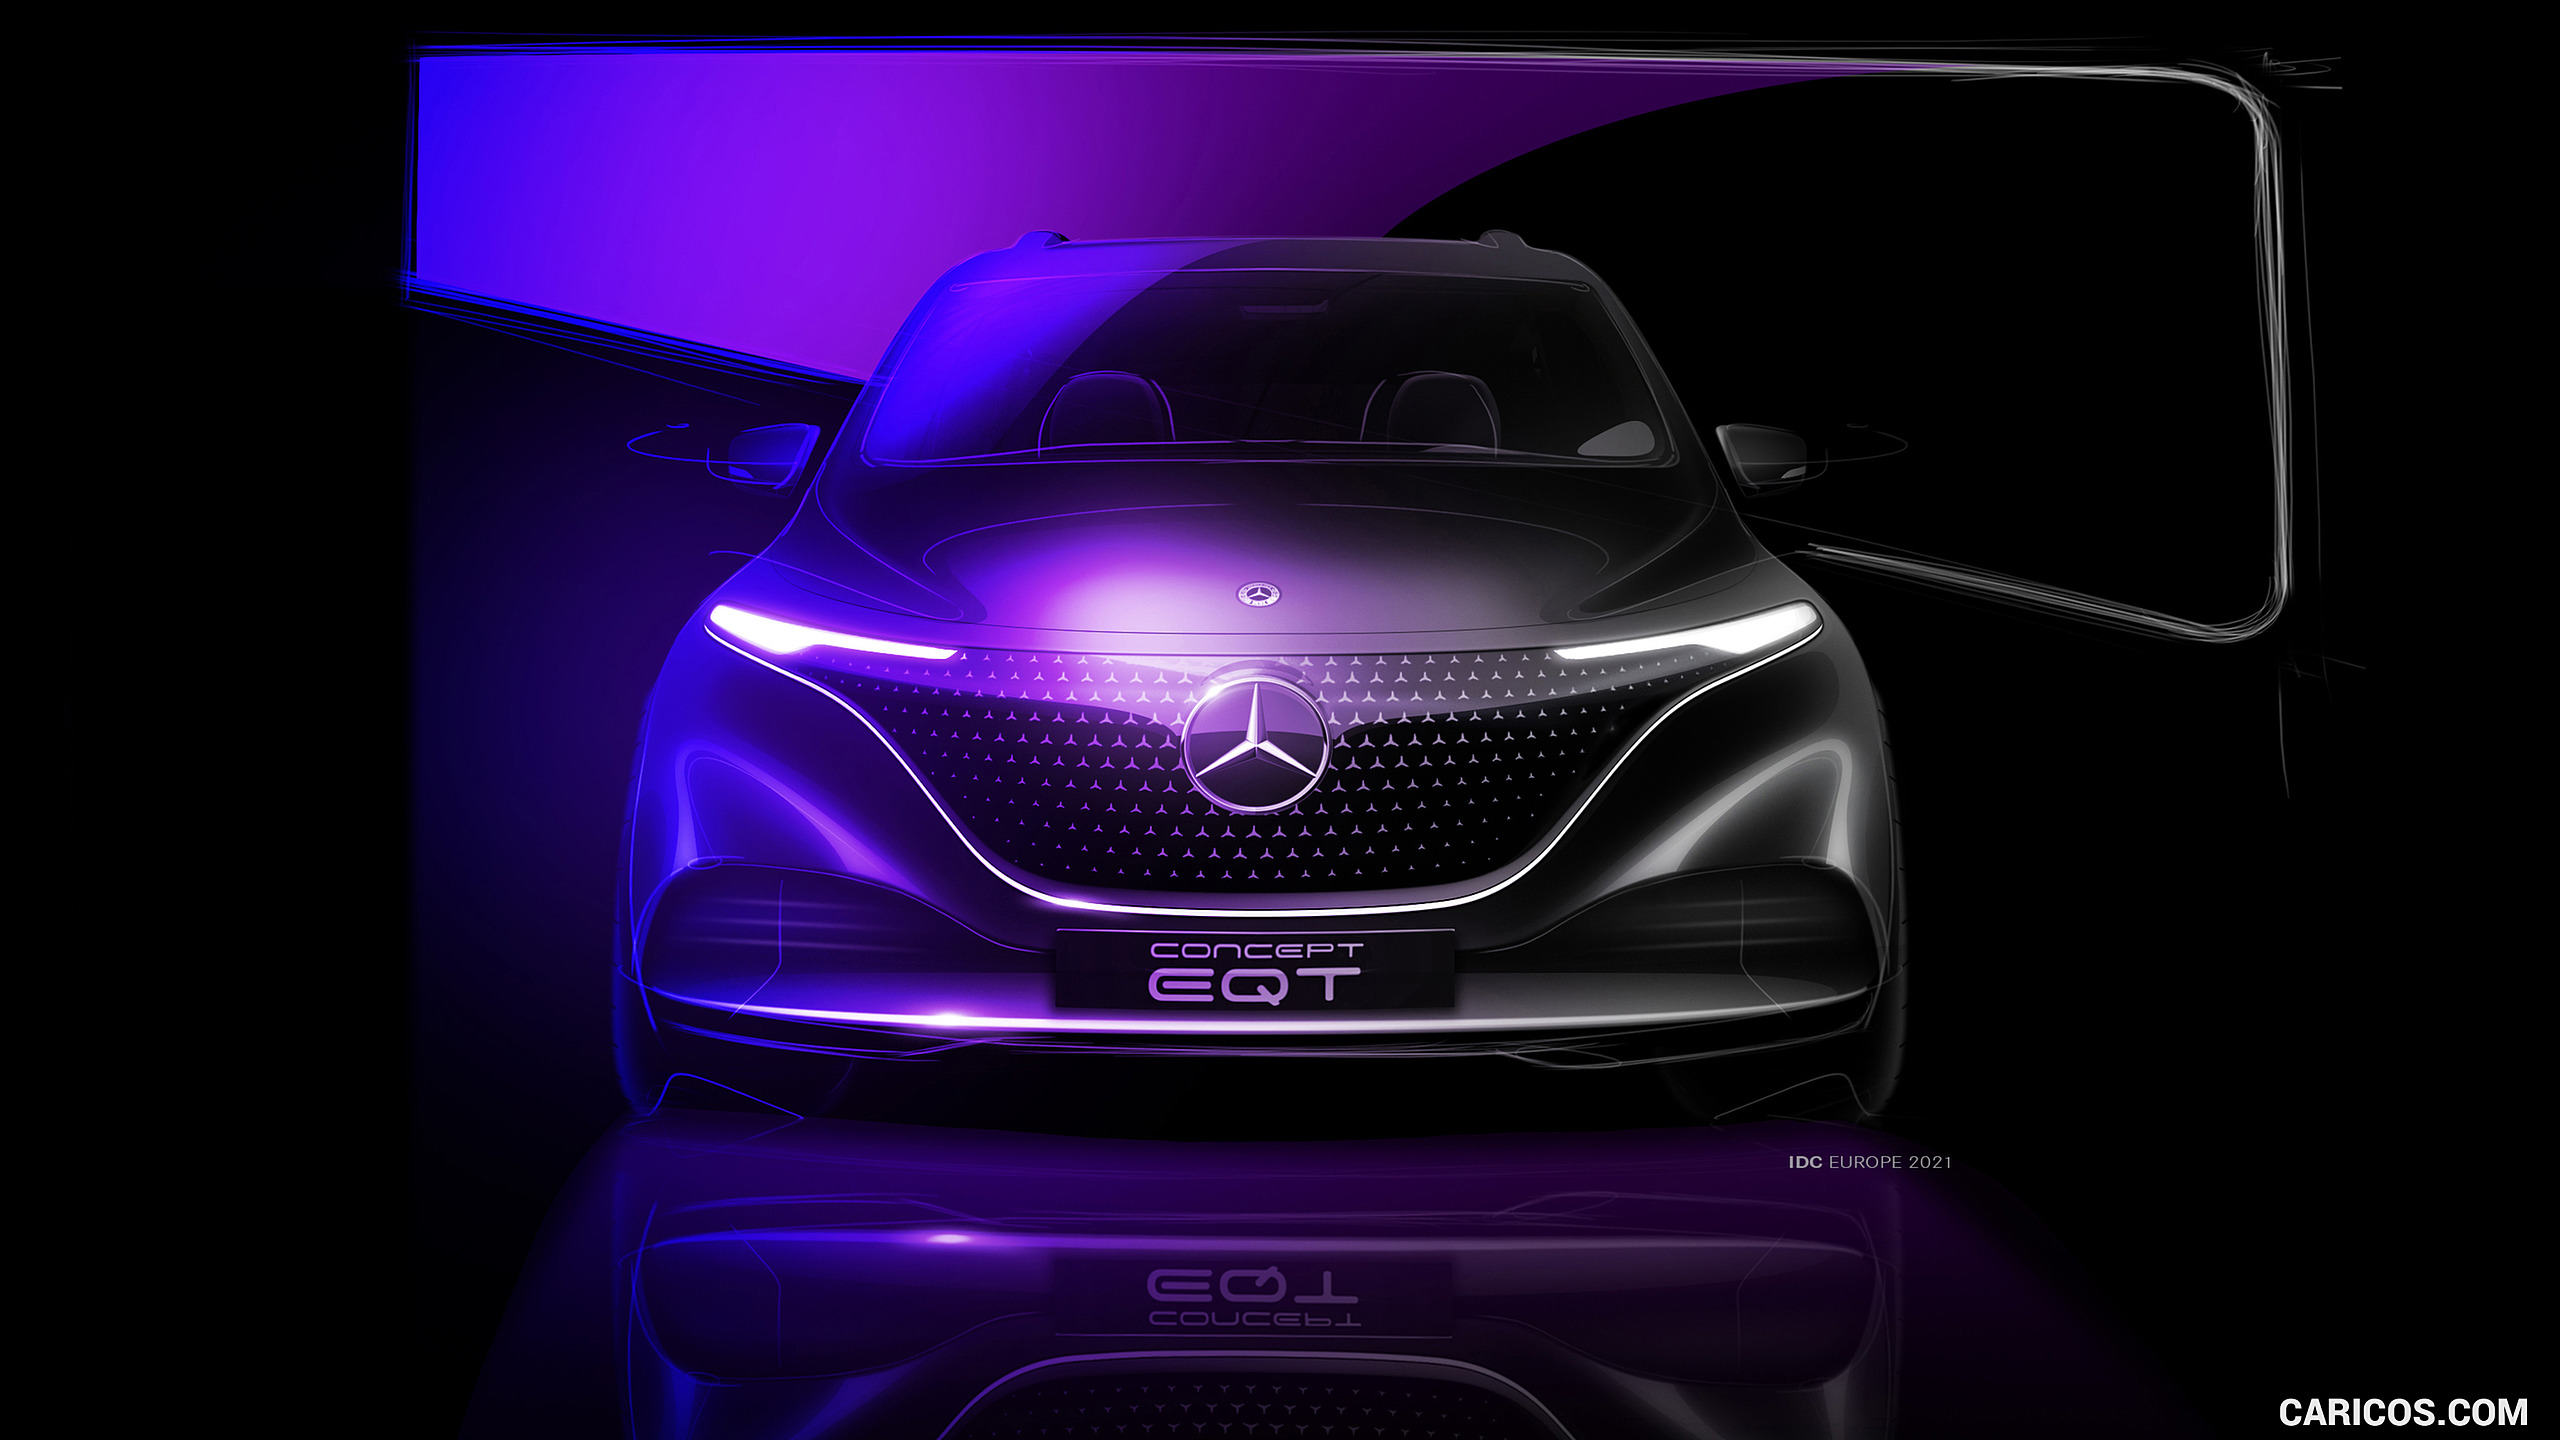 2021 Mercedes-Benz EQT Concept - Design Sketch, #46 of 51